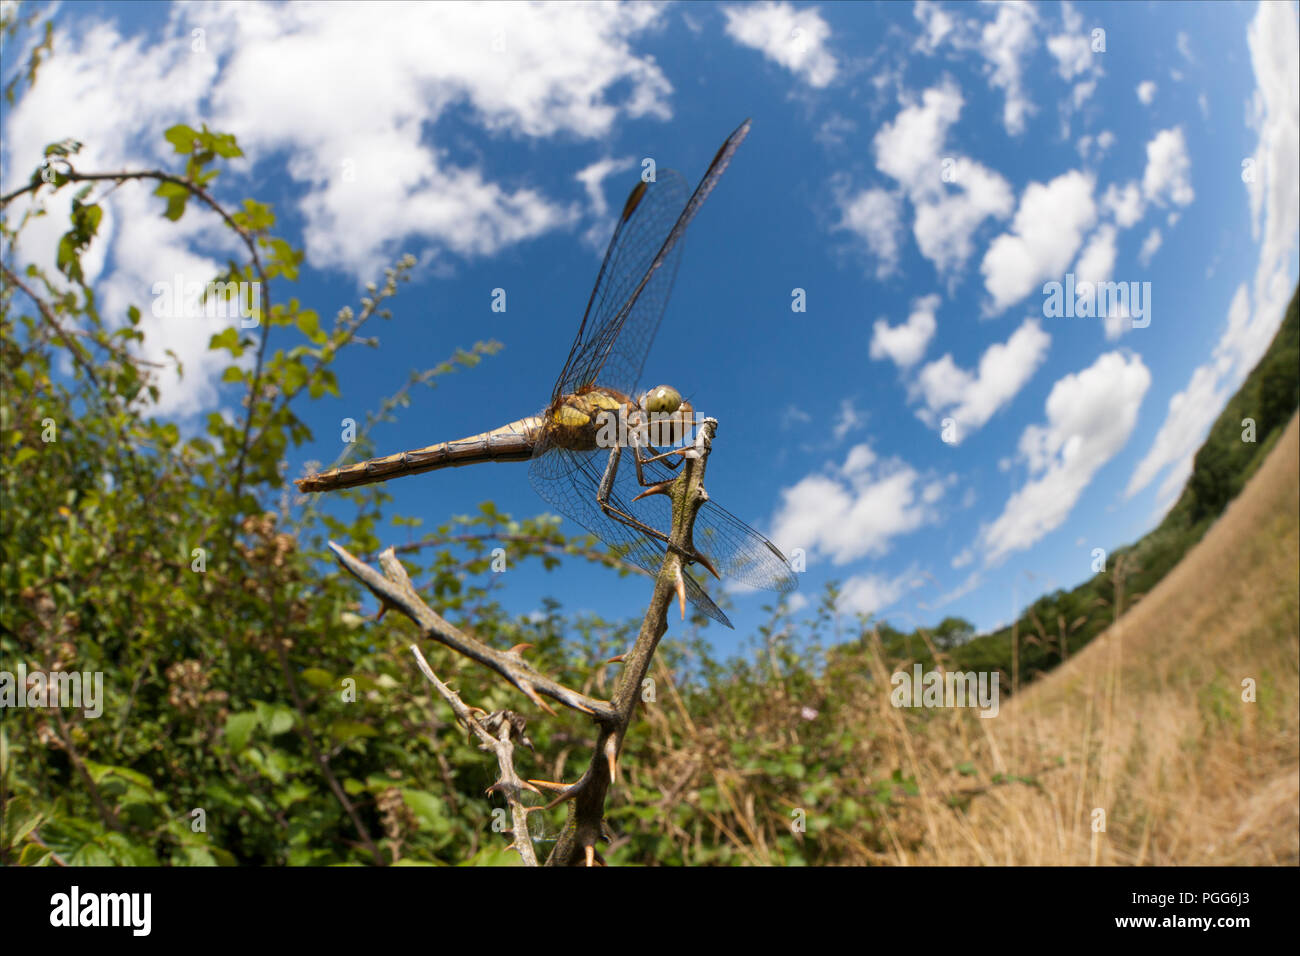 Eine weibliche Common darter libelle, Sympetrum striolatum, neben einer Hecke gehockt und an einem sonnigen Tag mit einer 15 mm Fish Eye Objektiv fotografiert. Norden tun Stockfoto